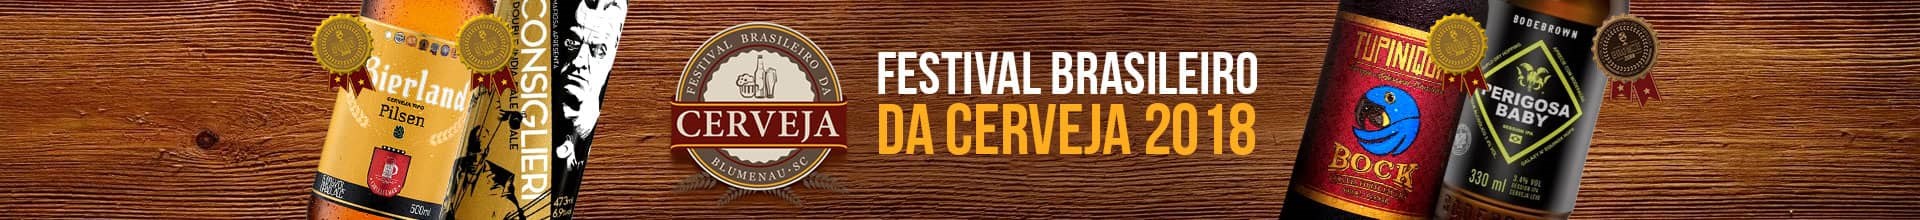 Festival Brasileiro de Cerveja